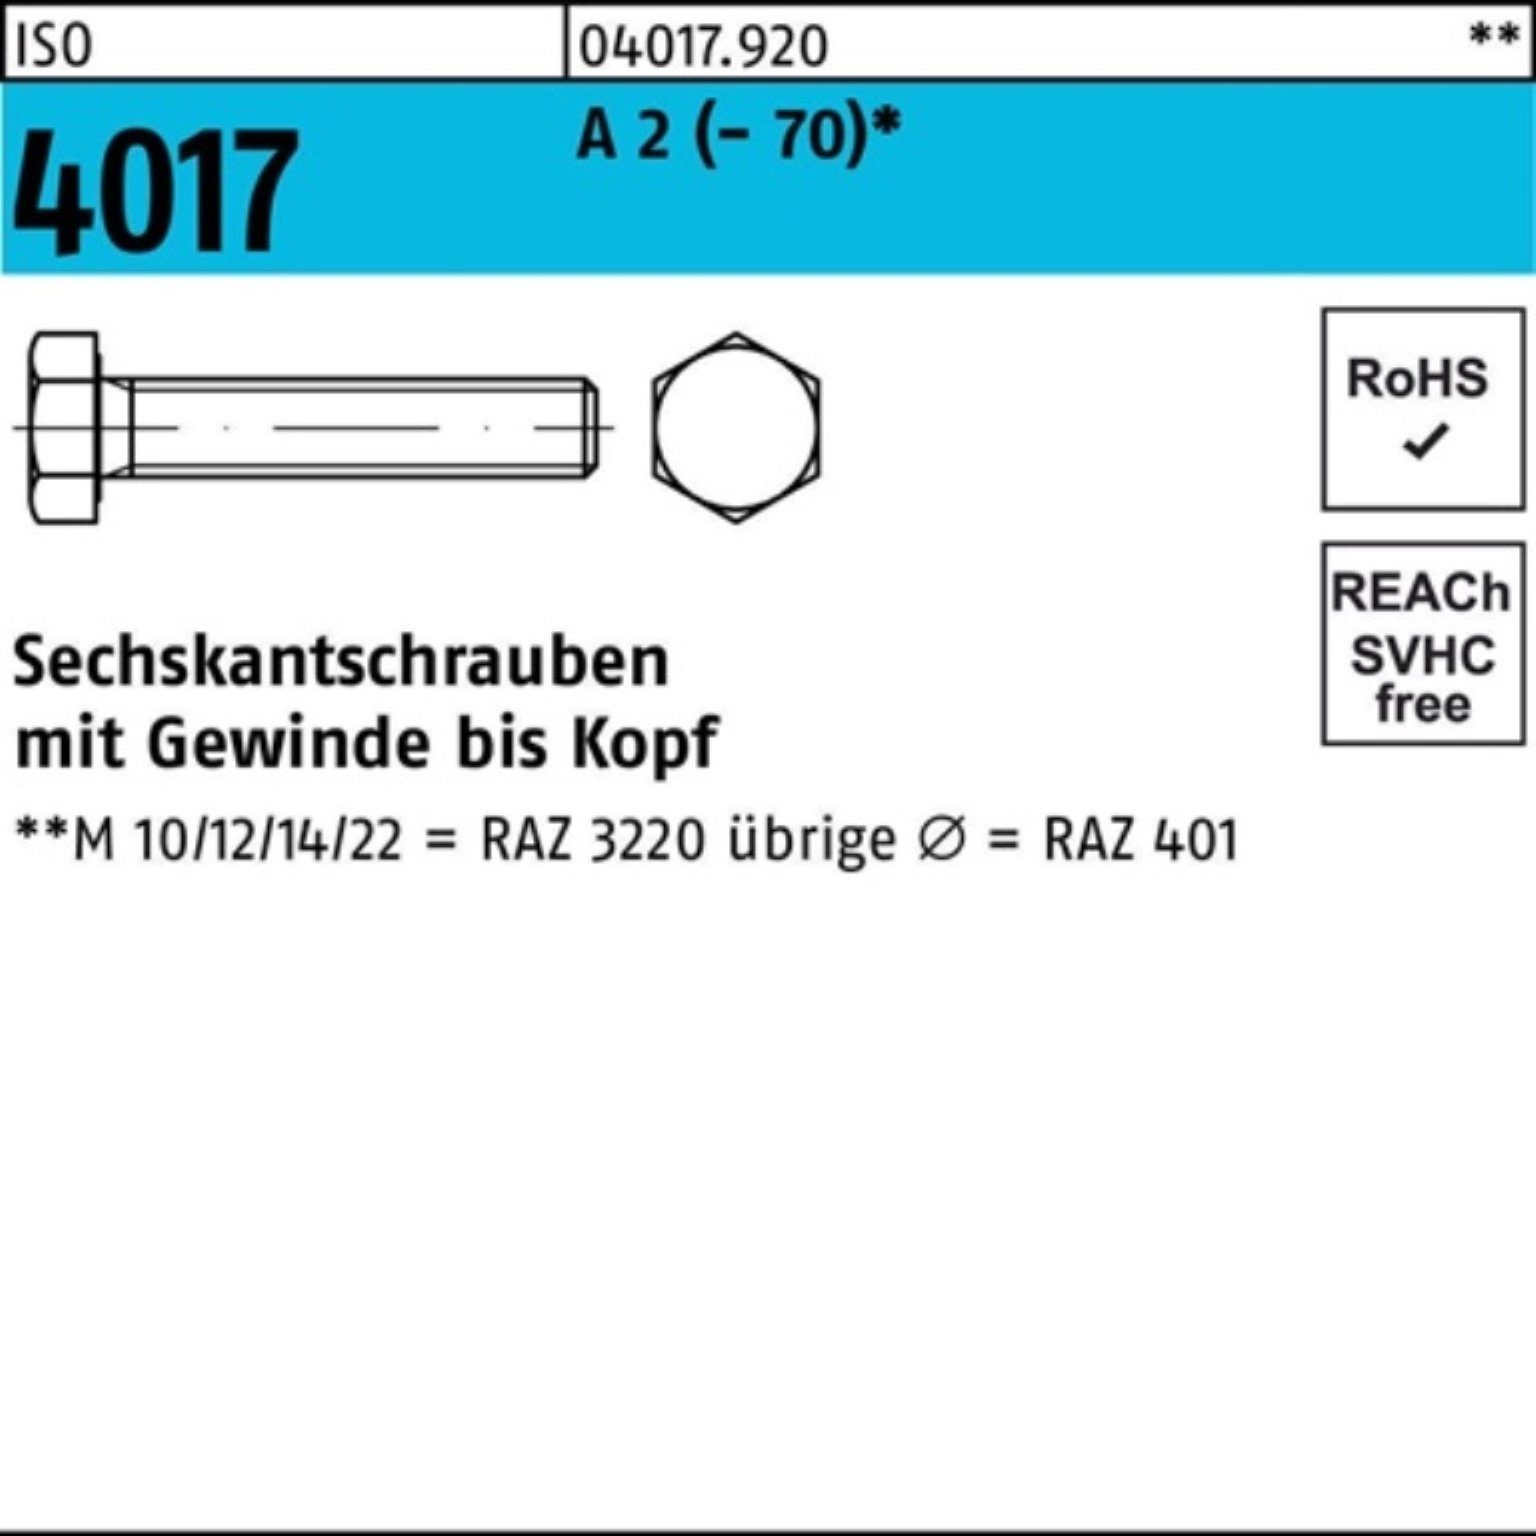 Bufab Sechskantschraube Pack 25 100 4017 Sechskantschraube (70) M8x A 2 ISO 100er Stück VG